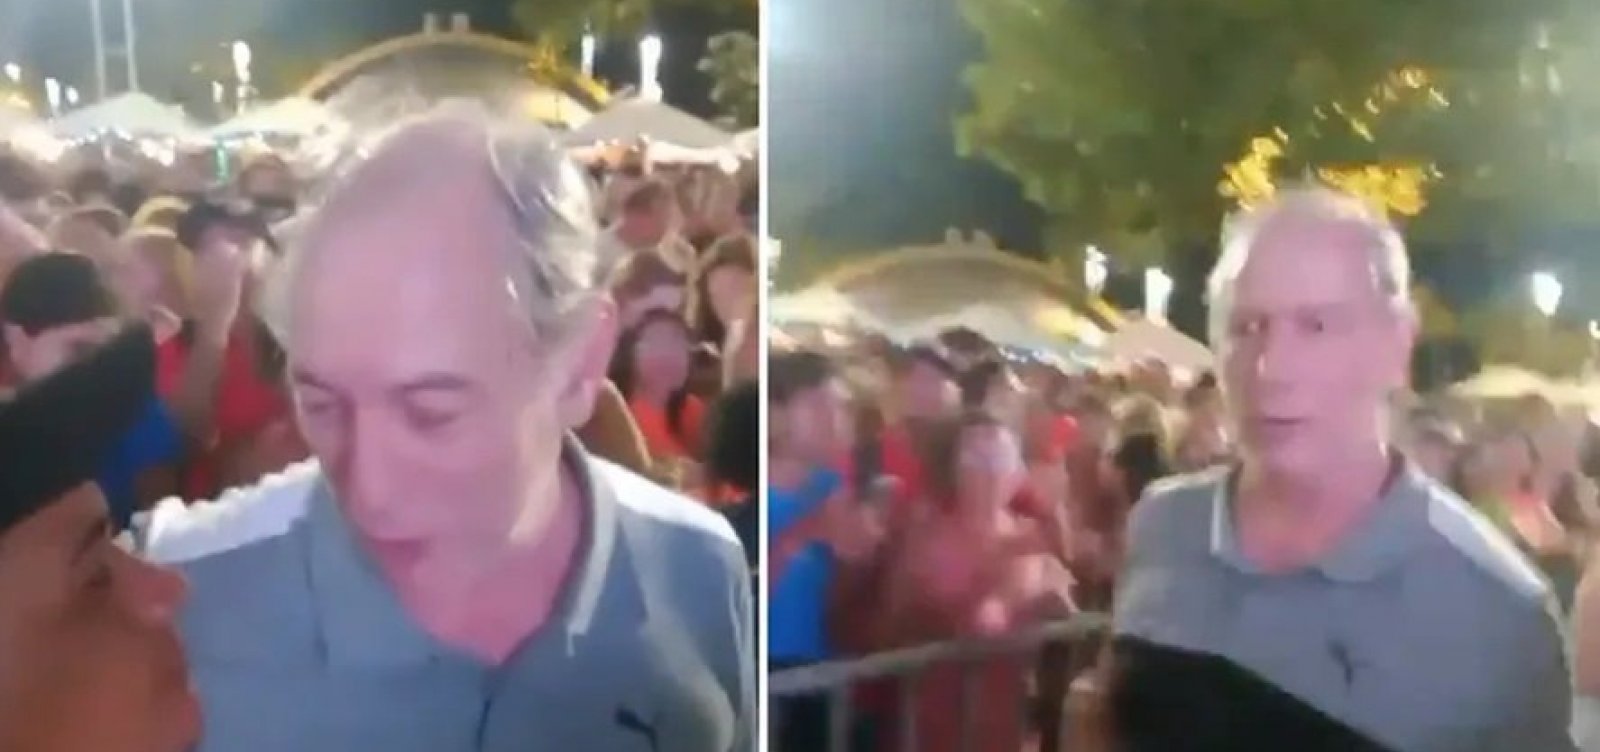 Após ser provocado, Ciro Gomes dá tapa na cara de homem durante show em Fortaleza; veja vídeo 